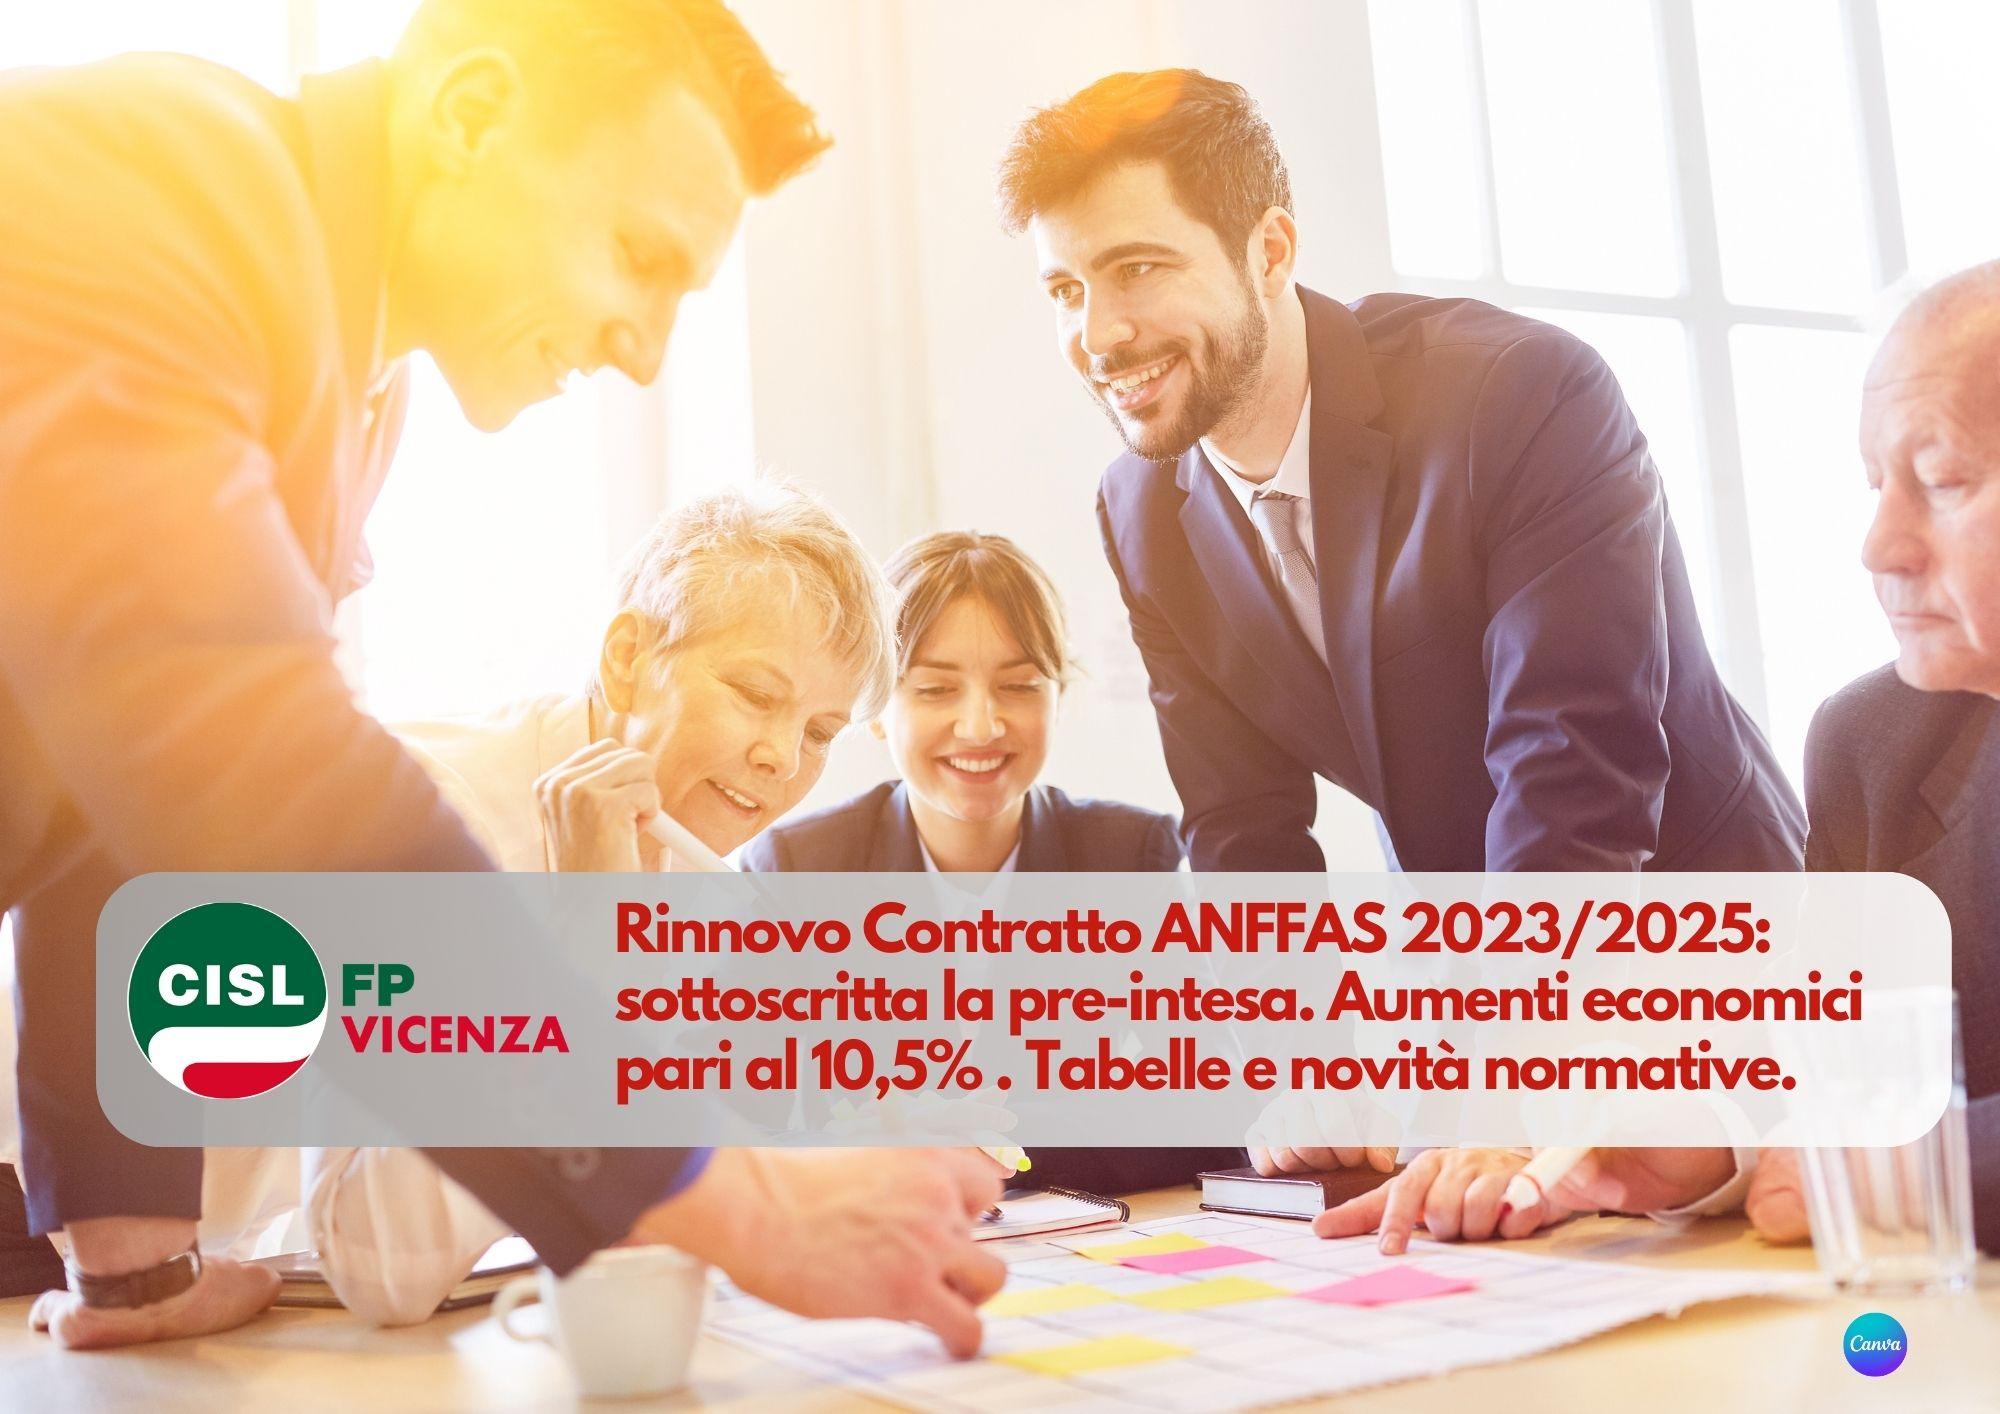 CISL FP Vicenza. Rinnovo Contratto ANFFAS 2023/2025: sottoscritta la pre-intesa. I dettagli